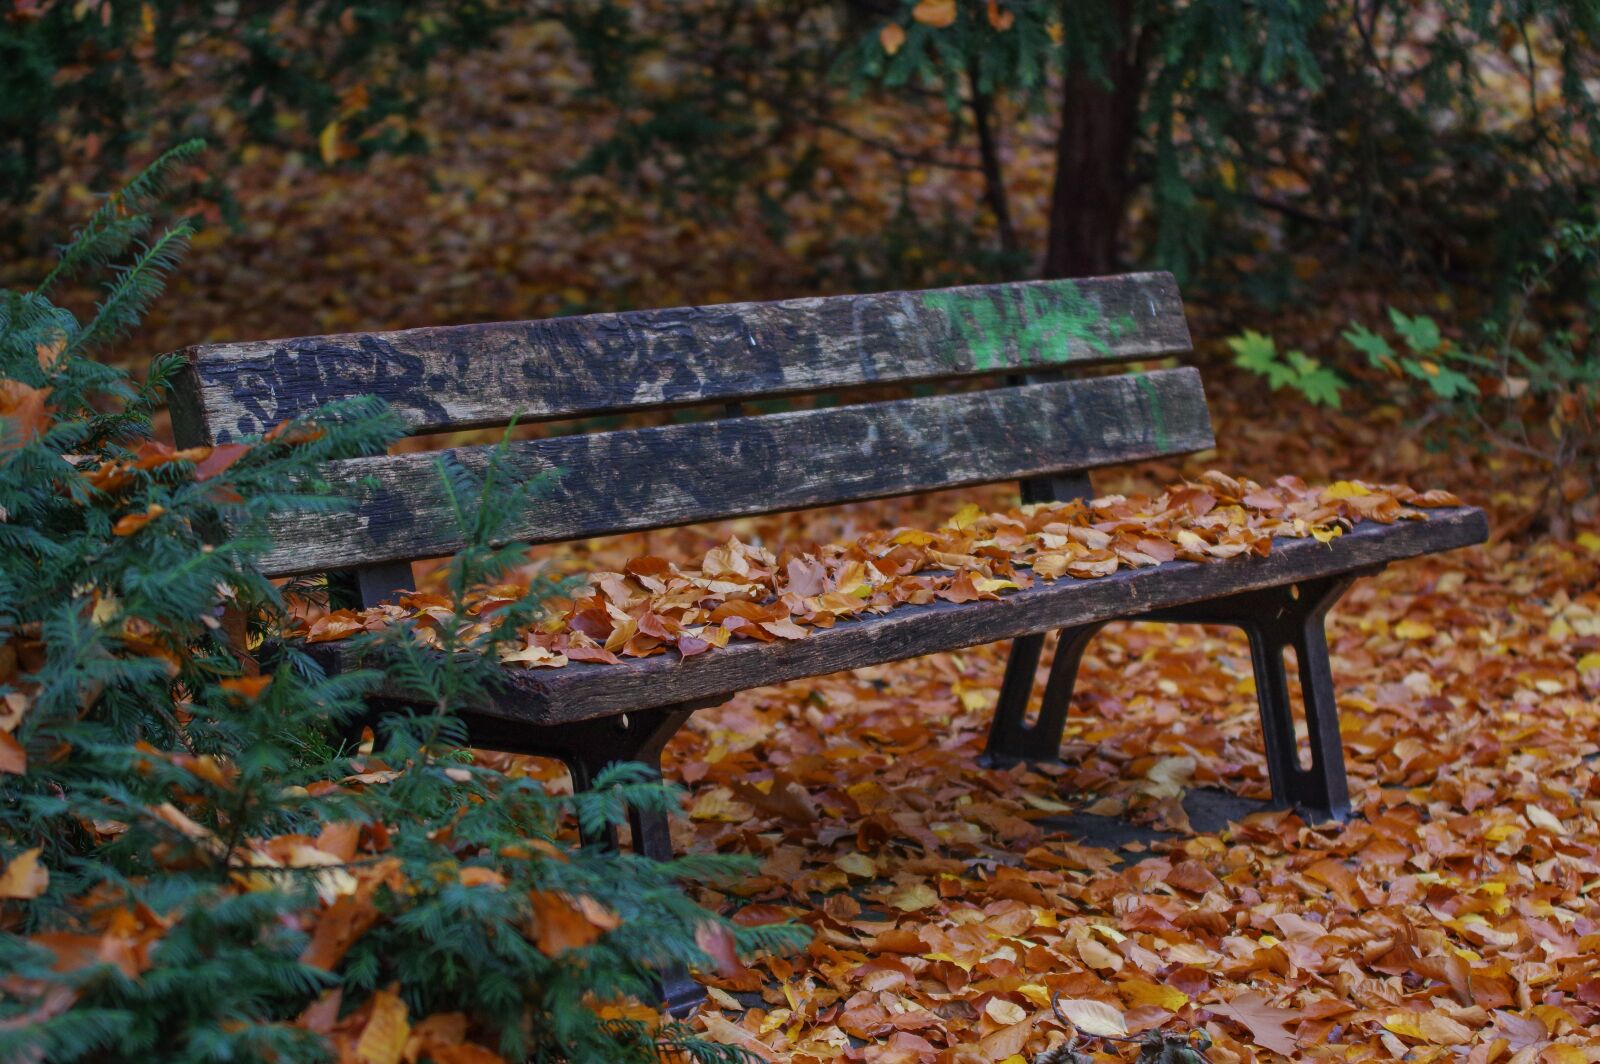 Pentax K-3 + Tamron SP AF 70-200mm F2.8 Di LD (IF) MACRO sample photo. Park bench, autumn, nature photography